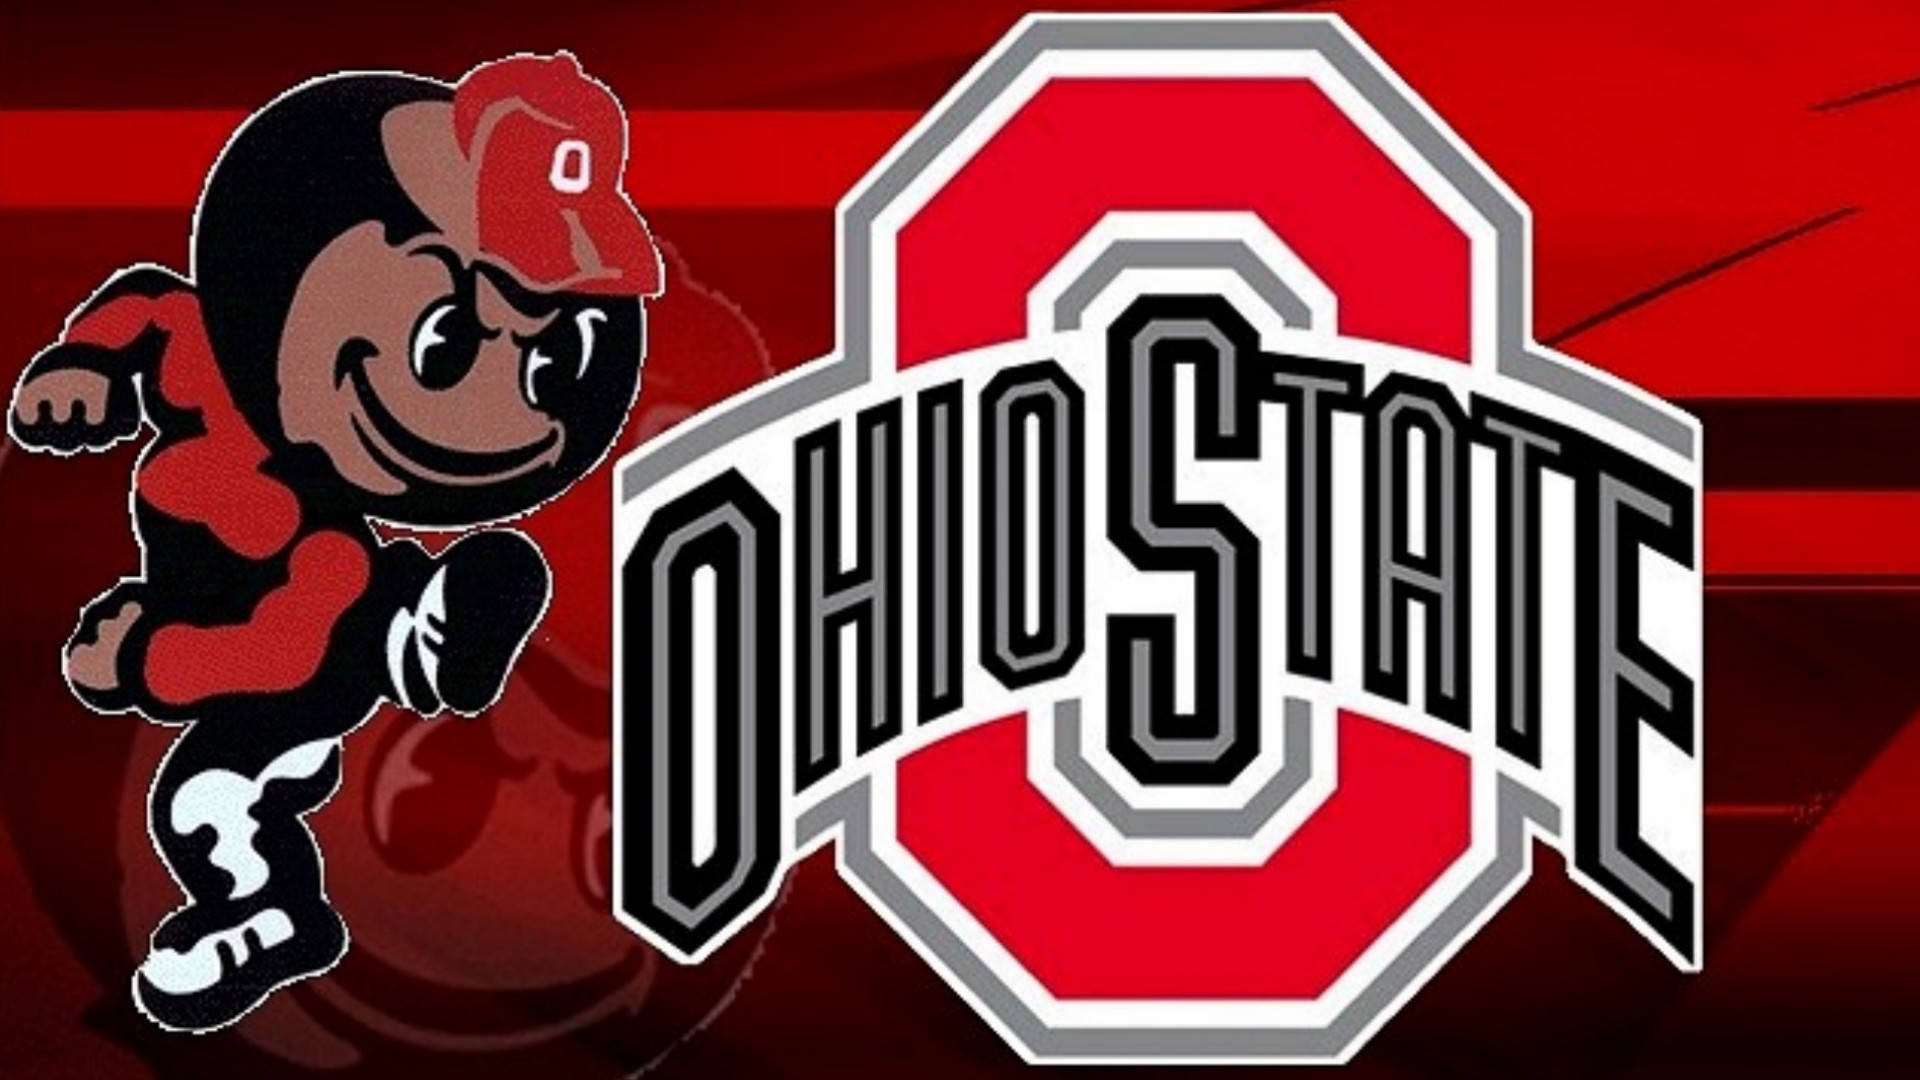 Ohio State University Mascot Digital Illustration Background